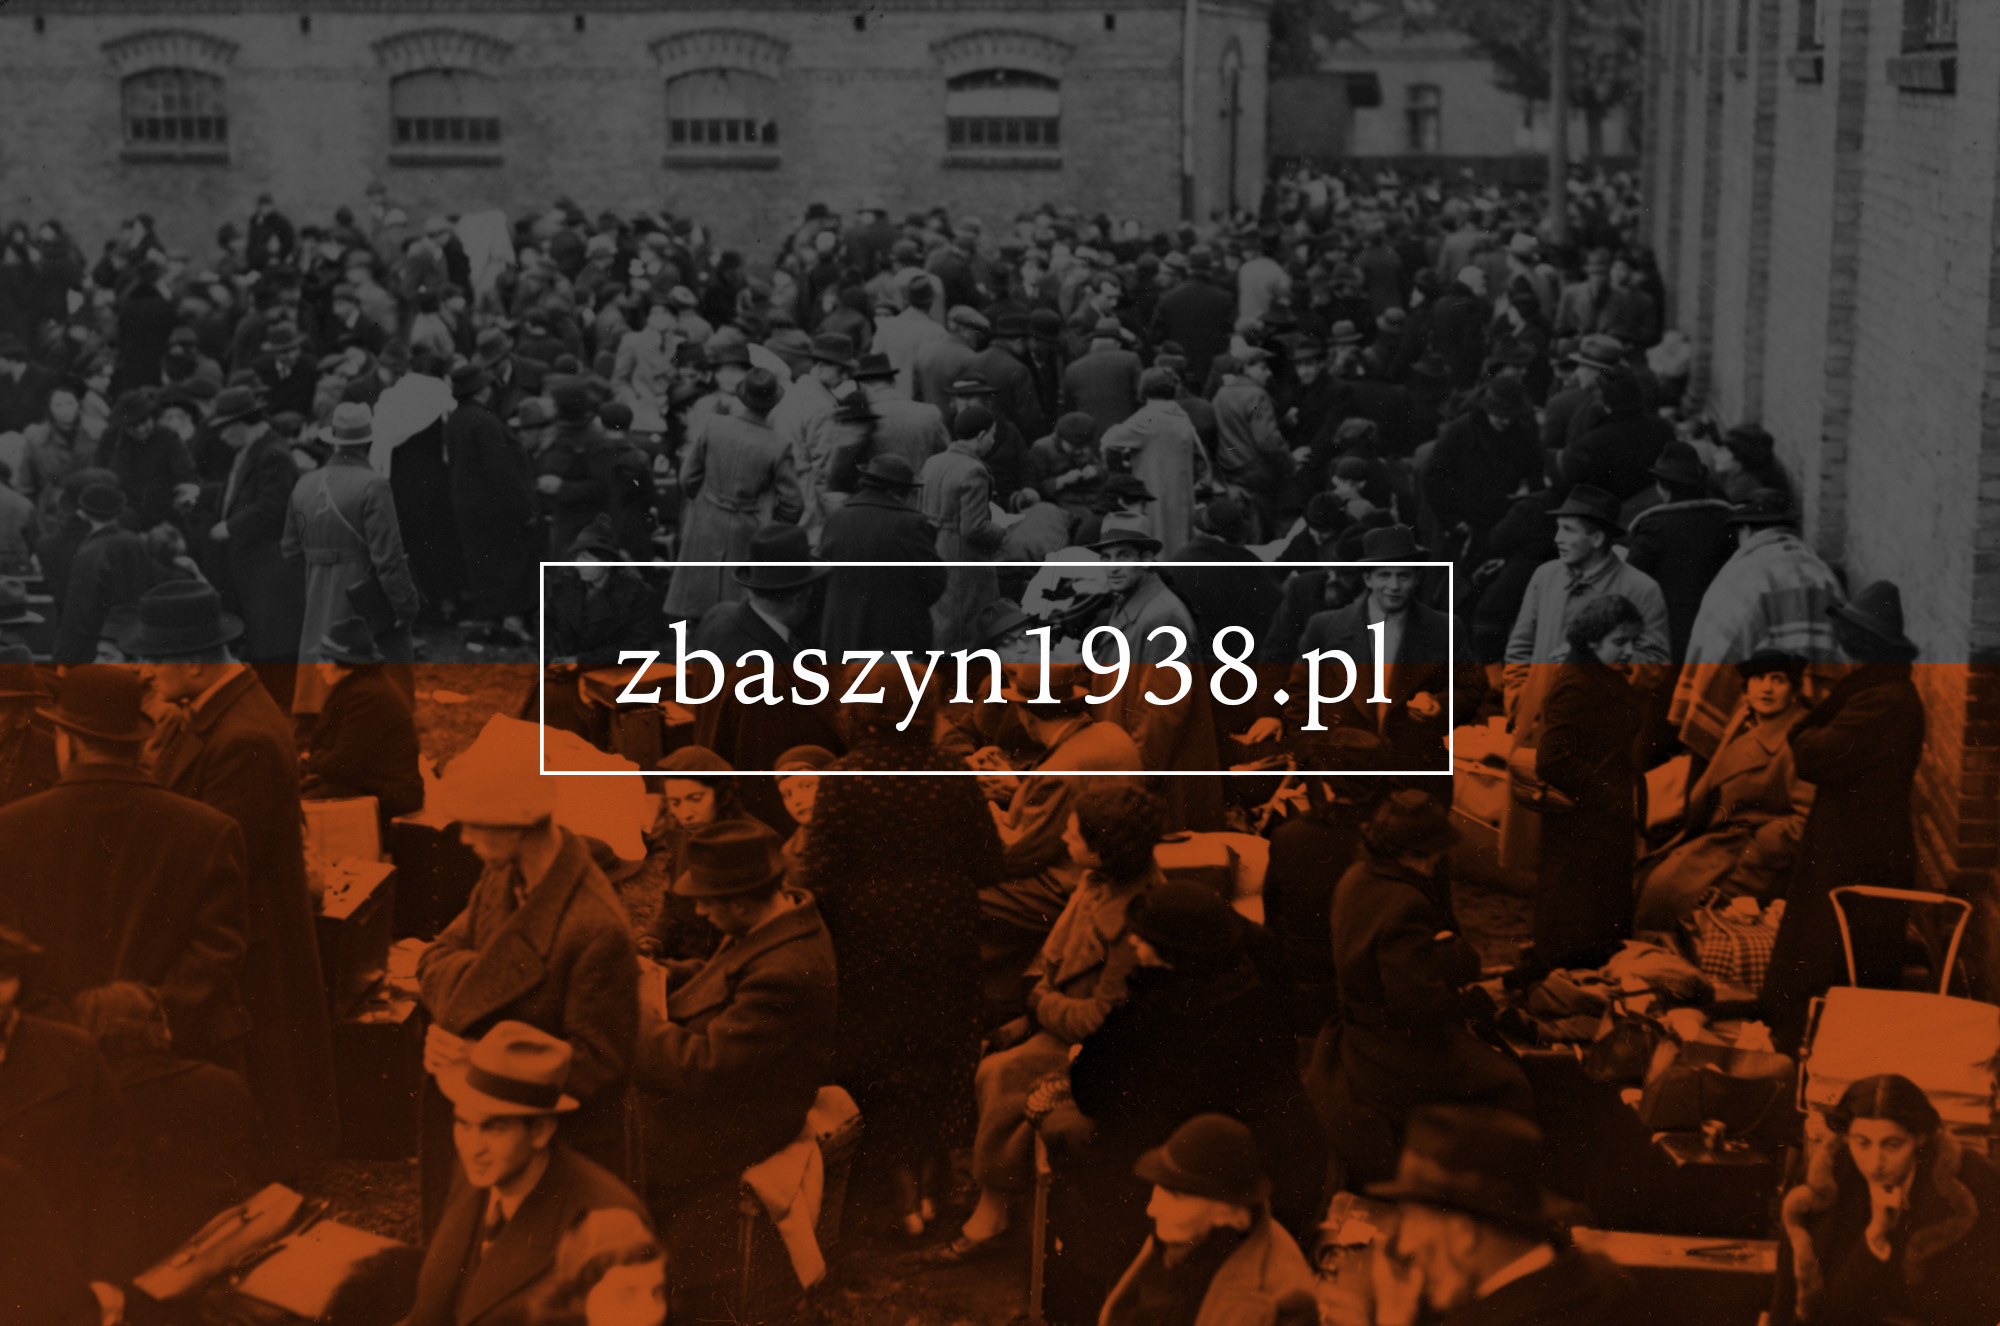 www.zbaszyn1938.pl - portal łączący cyfrowe zasoby archiwalne